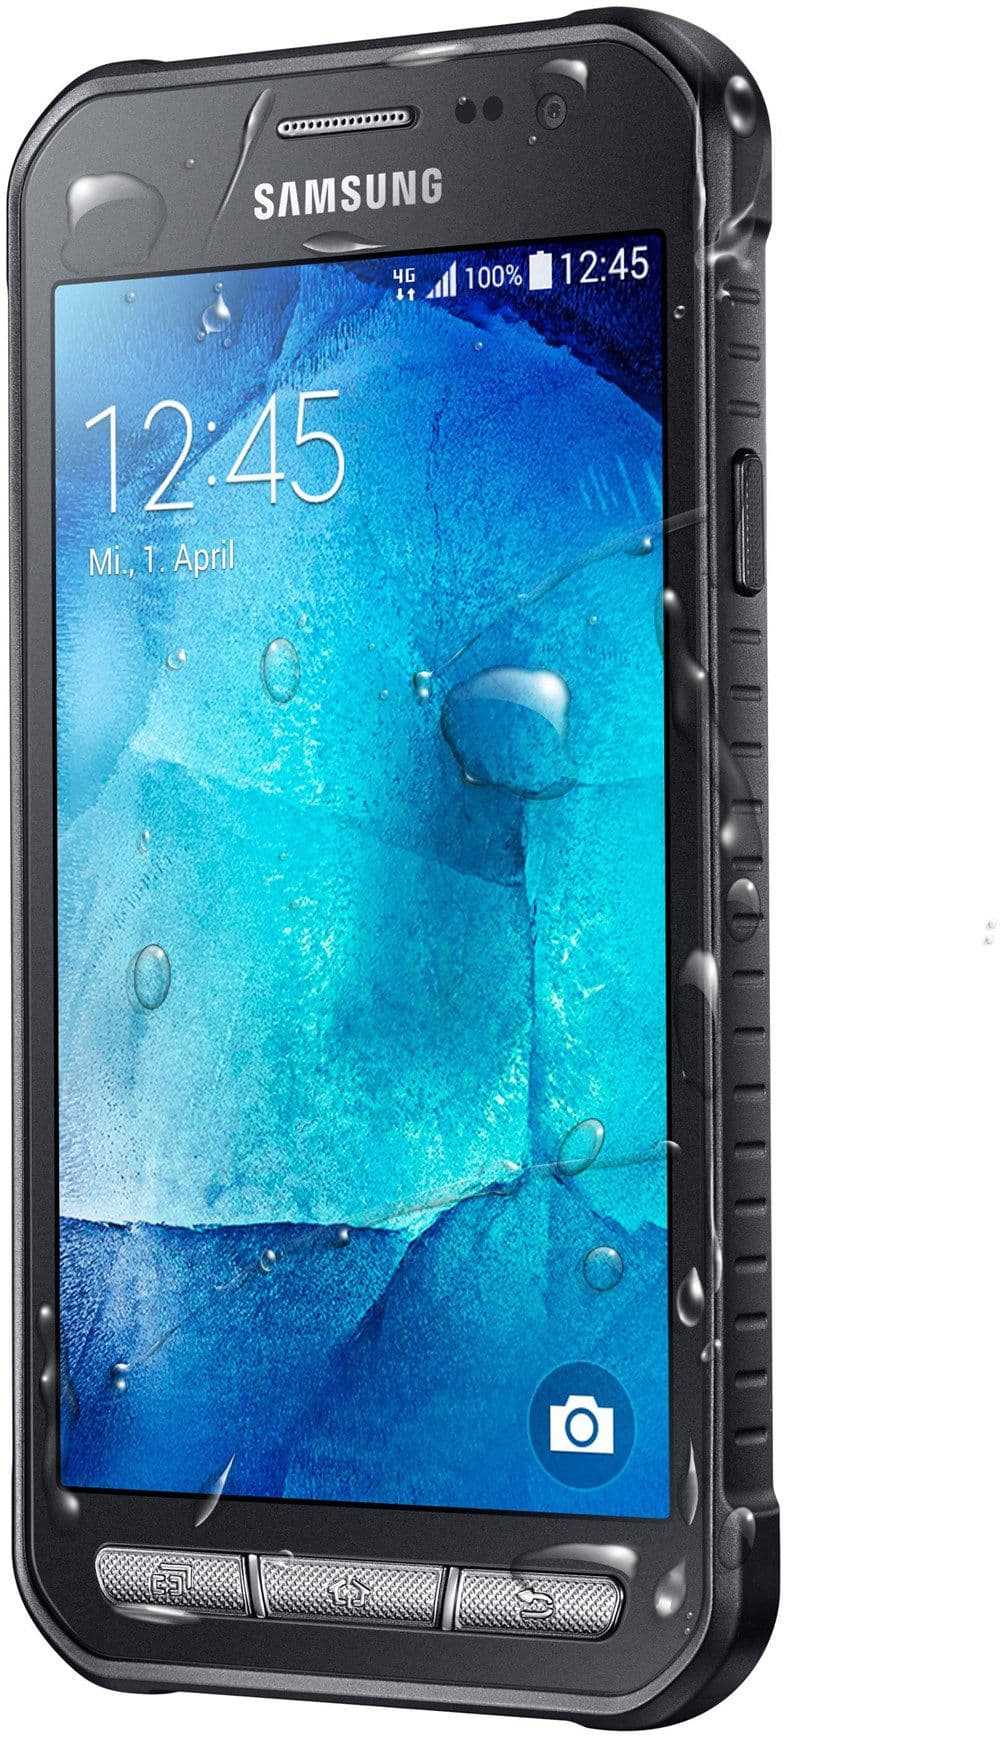 Мобильный телефон Samsung Galaxy Xcover 3 - подробные характеристики обзоры видео фото Цены в интернет-магазинах где можно купить мобильный телефон Samsung Galaxy Xcover 3